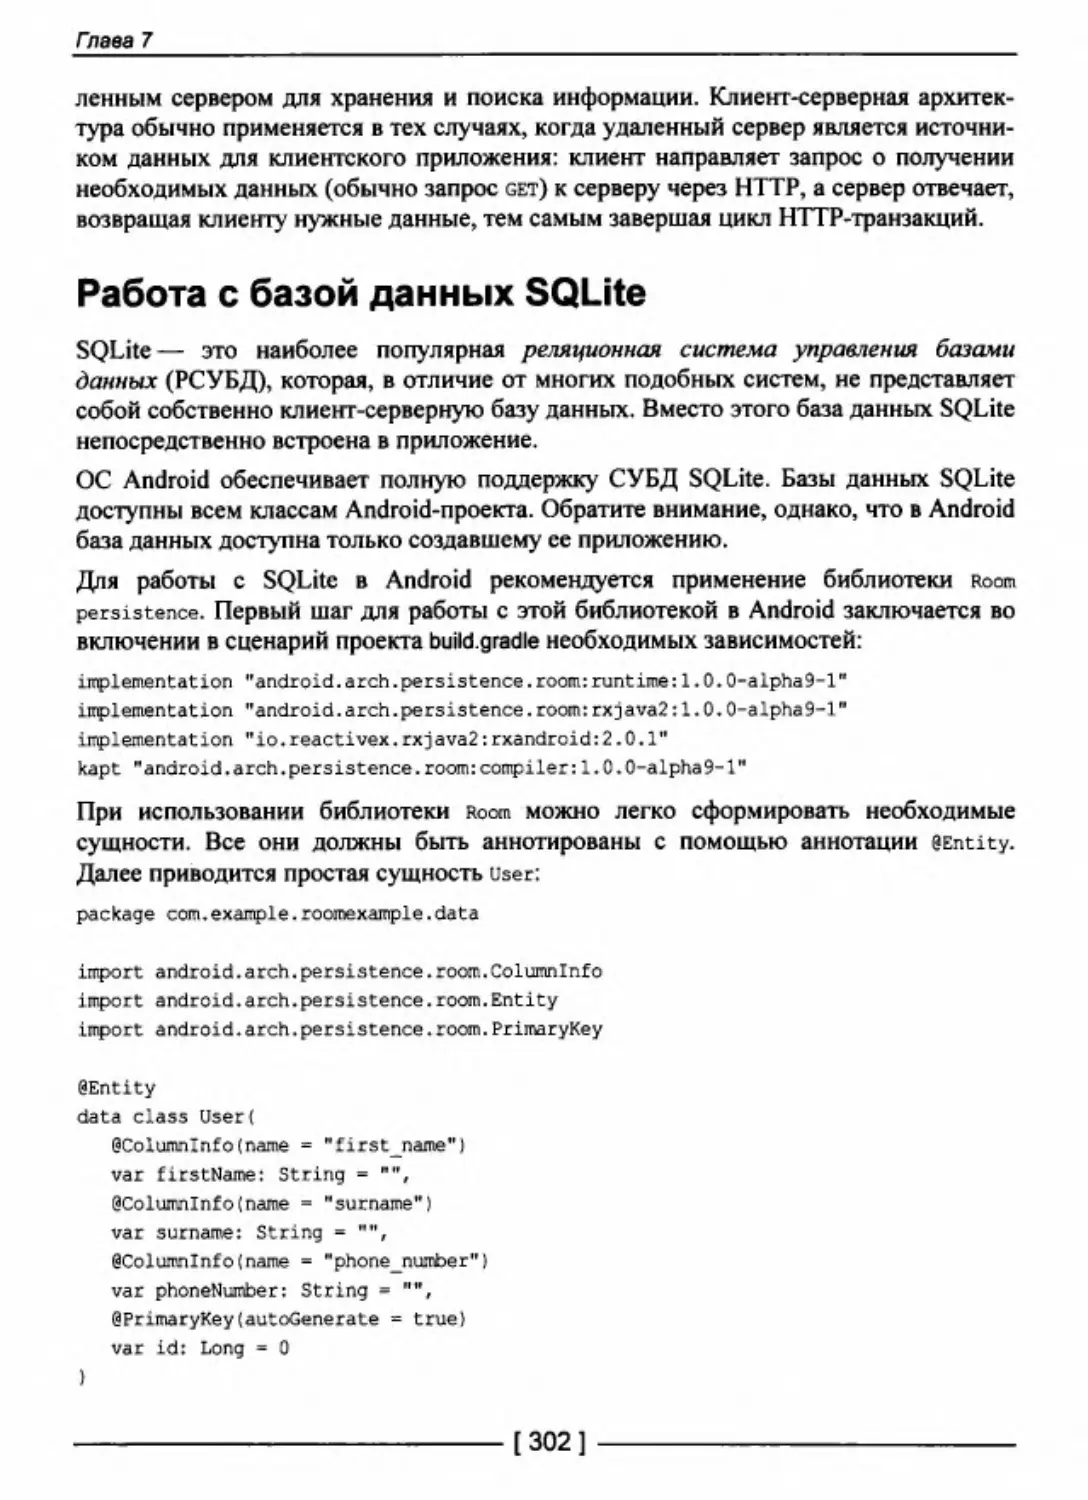 Работа с базой данных SQLite